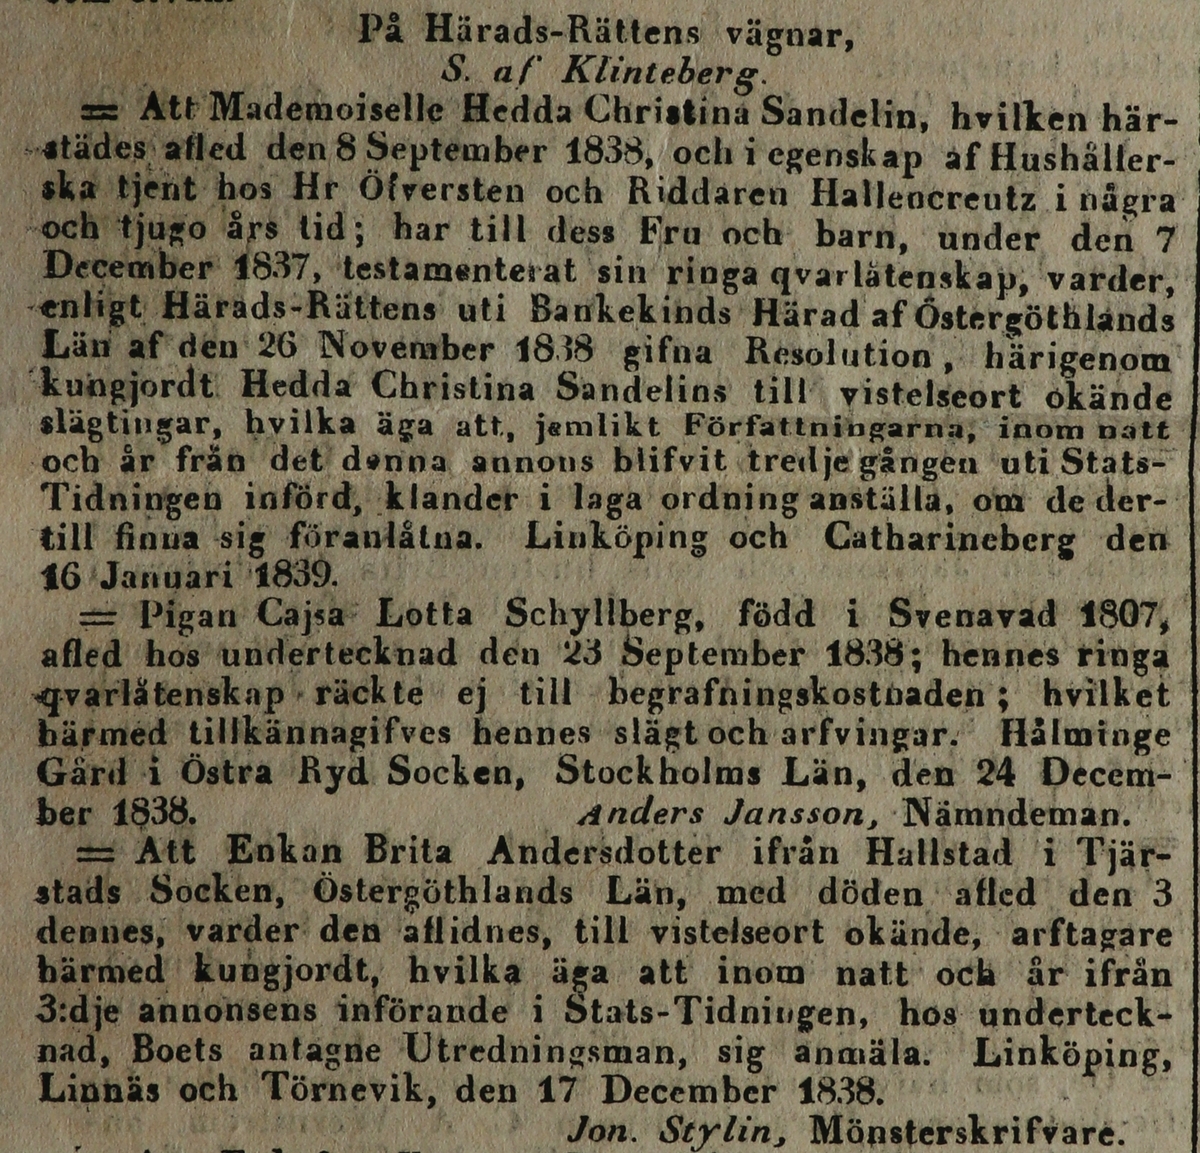 Två tidningar från 3 april 1837 och 5 februari 1839. 
Tillståmd vid förvärv: Vikningslinjer, ena tidningen har svart tejp längs med vänstra kanten och en anteckning i övre högra hörnet.